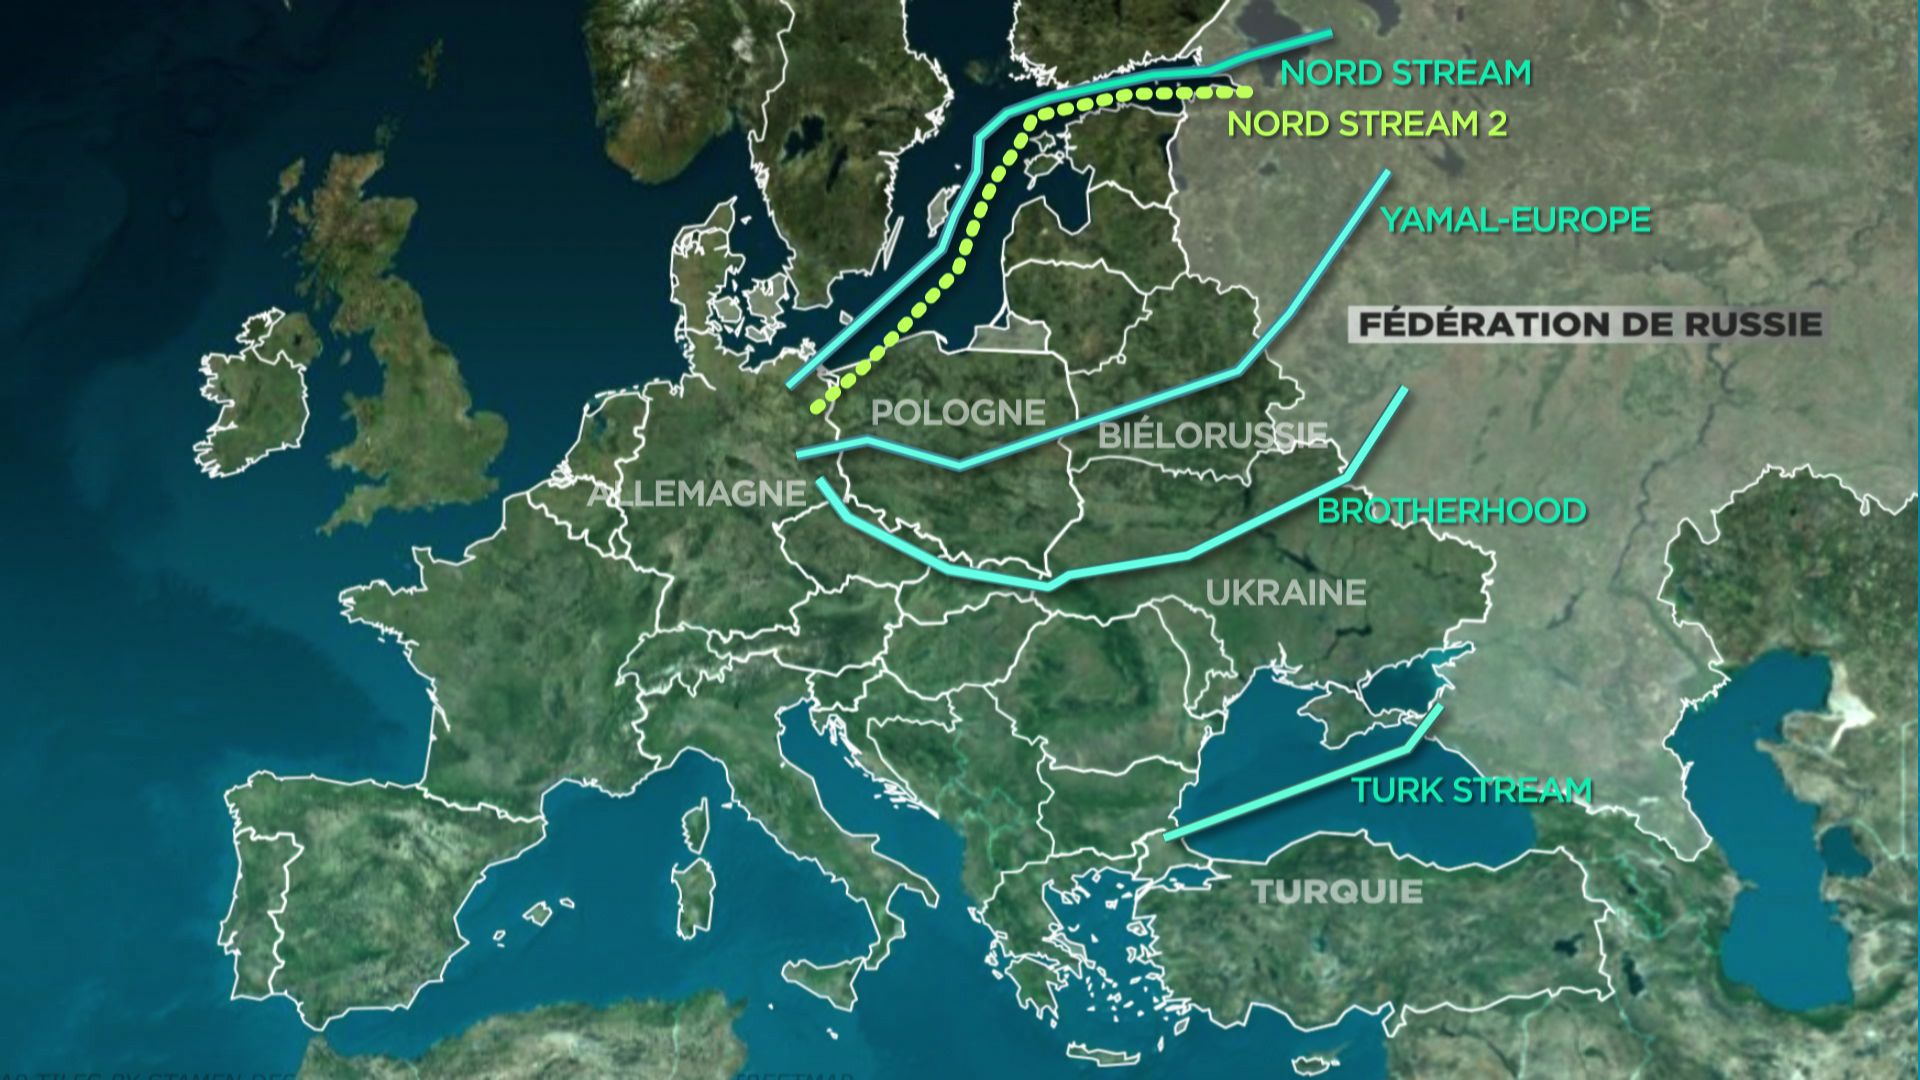 Les gazoducs qui permettent à la Russie d’acheminer le gaz vers l’Europe : le Nord Stream, le Yamal-Europe, le Brotherhood et le Turk Stream. Le Nord Stream 2 est terminé mais pas encore mis en service.